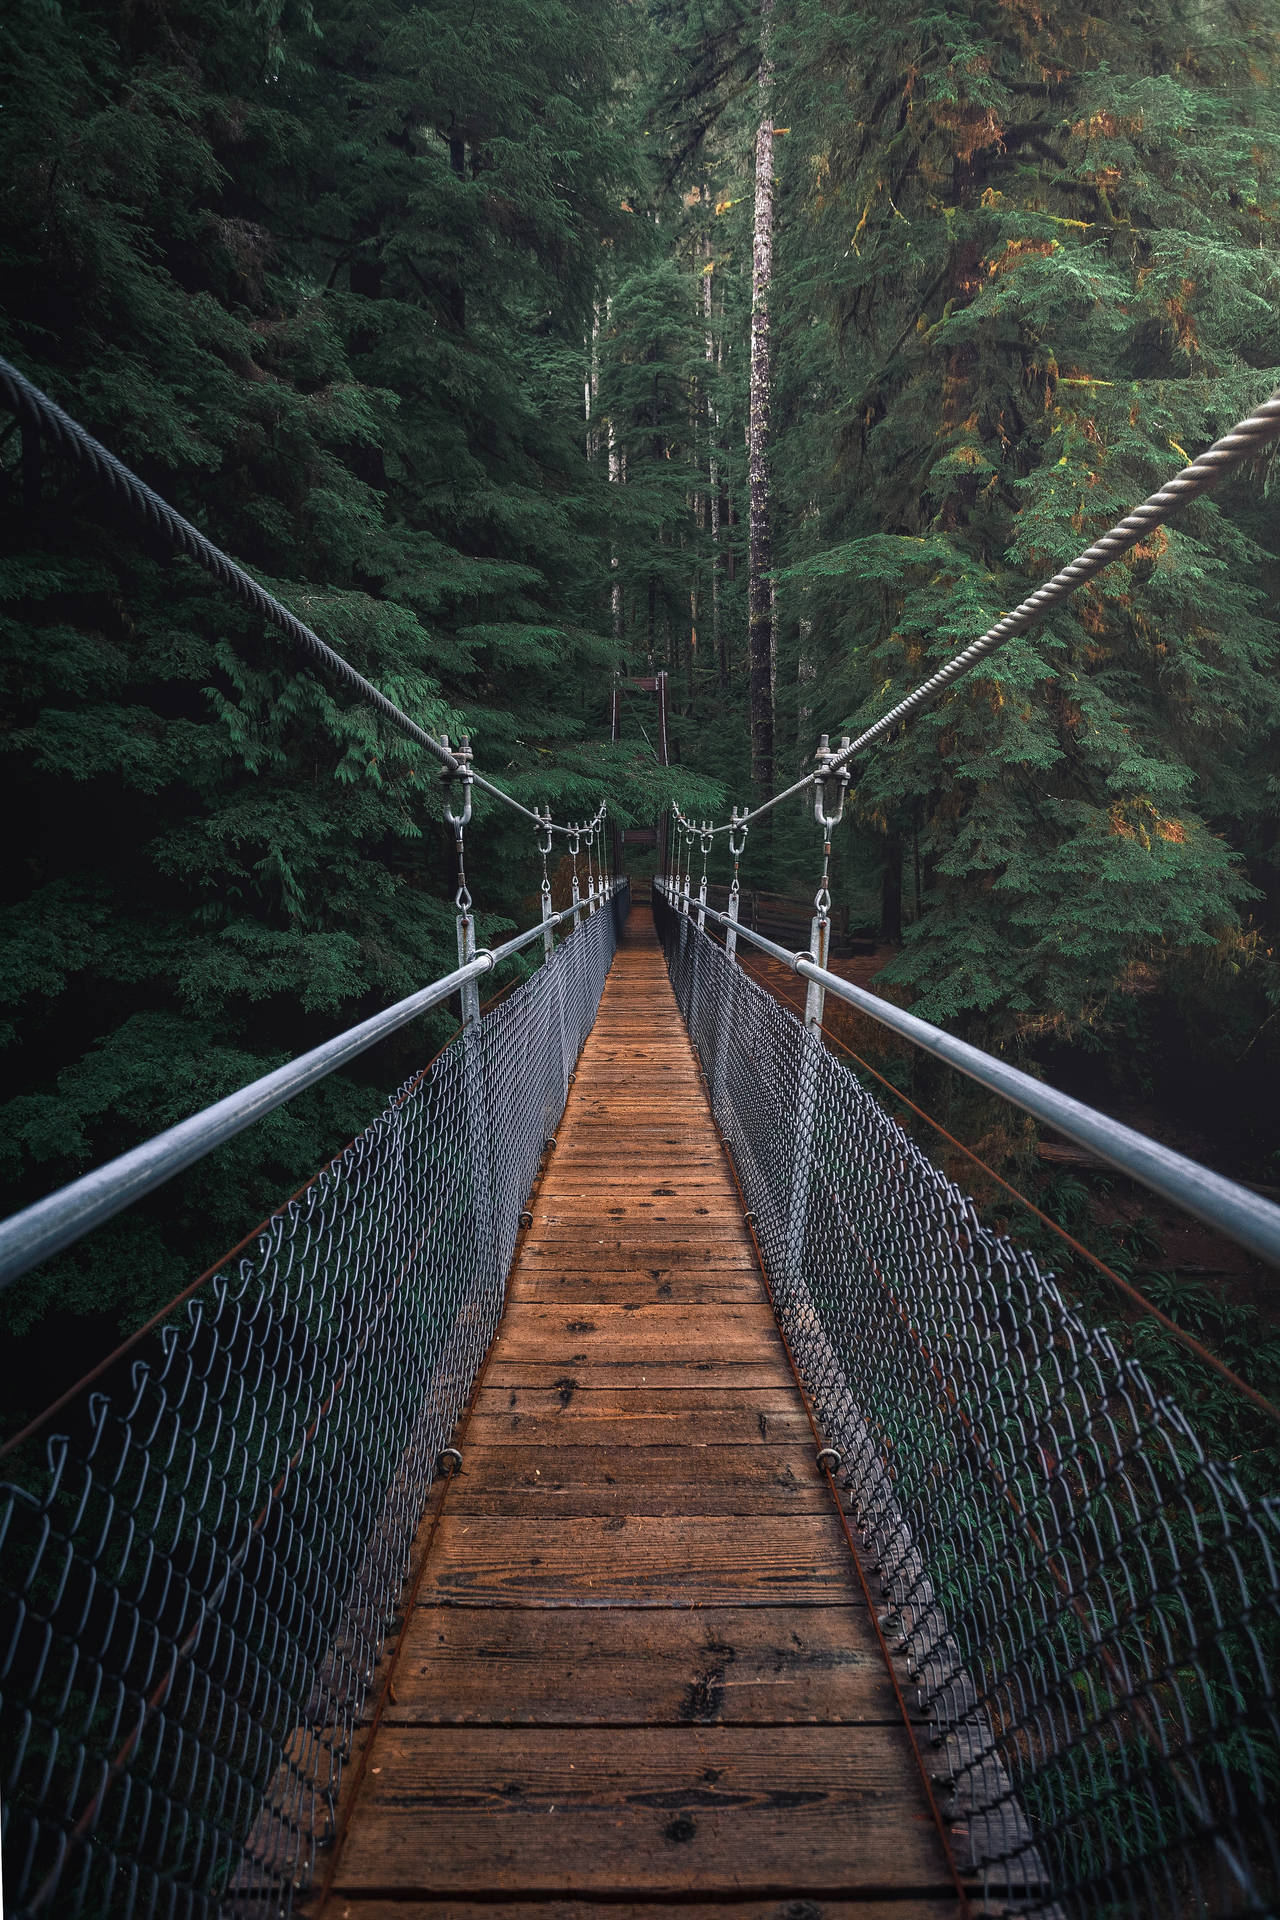 Take A Hike On This Hanging Bridge